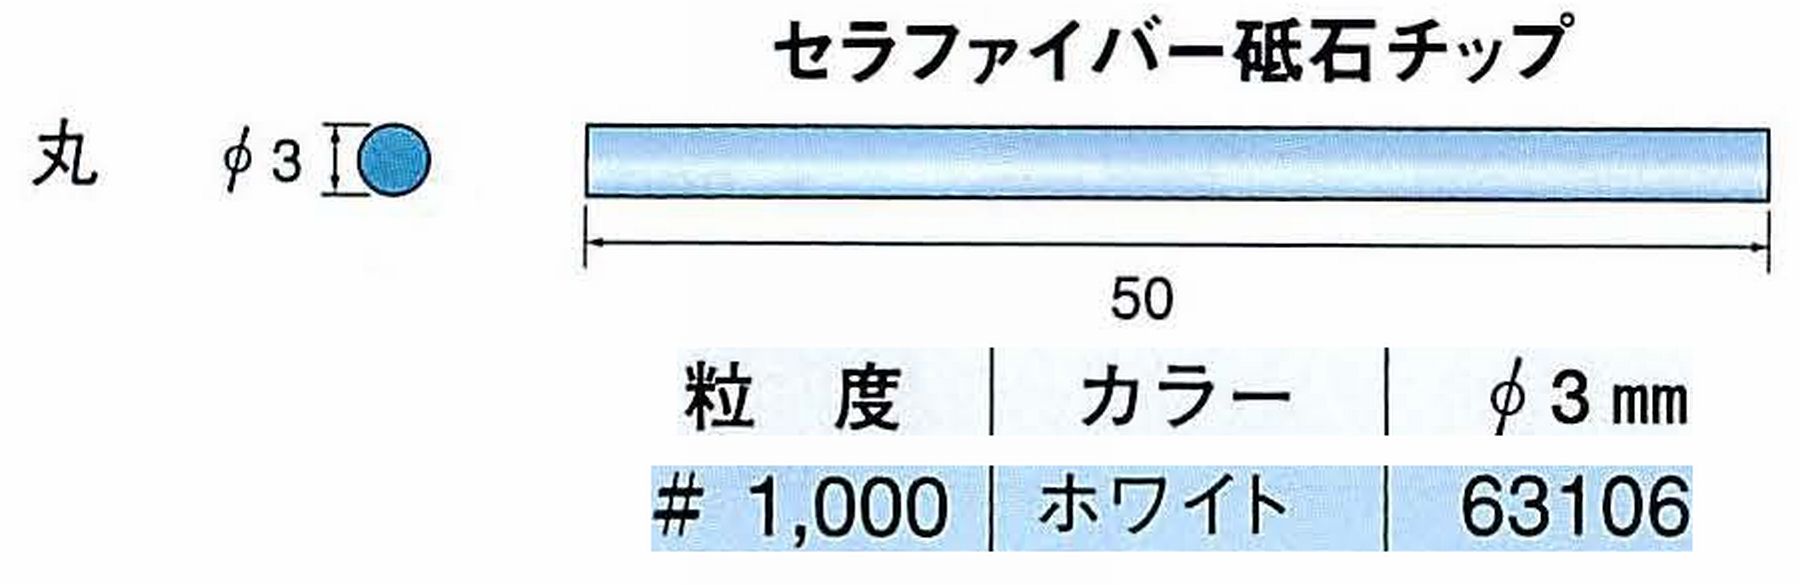 ナカニシ/NAKANISHI 超音波研磨装置 シーナスneo/シーナス専用工具 セラファイバー砥石チップ 丸 63106